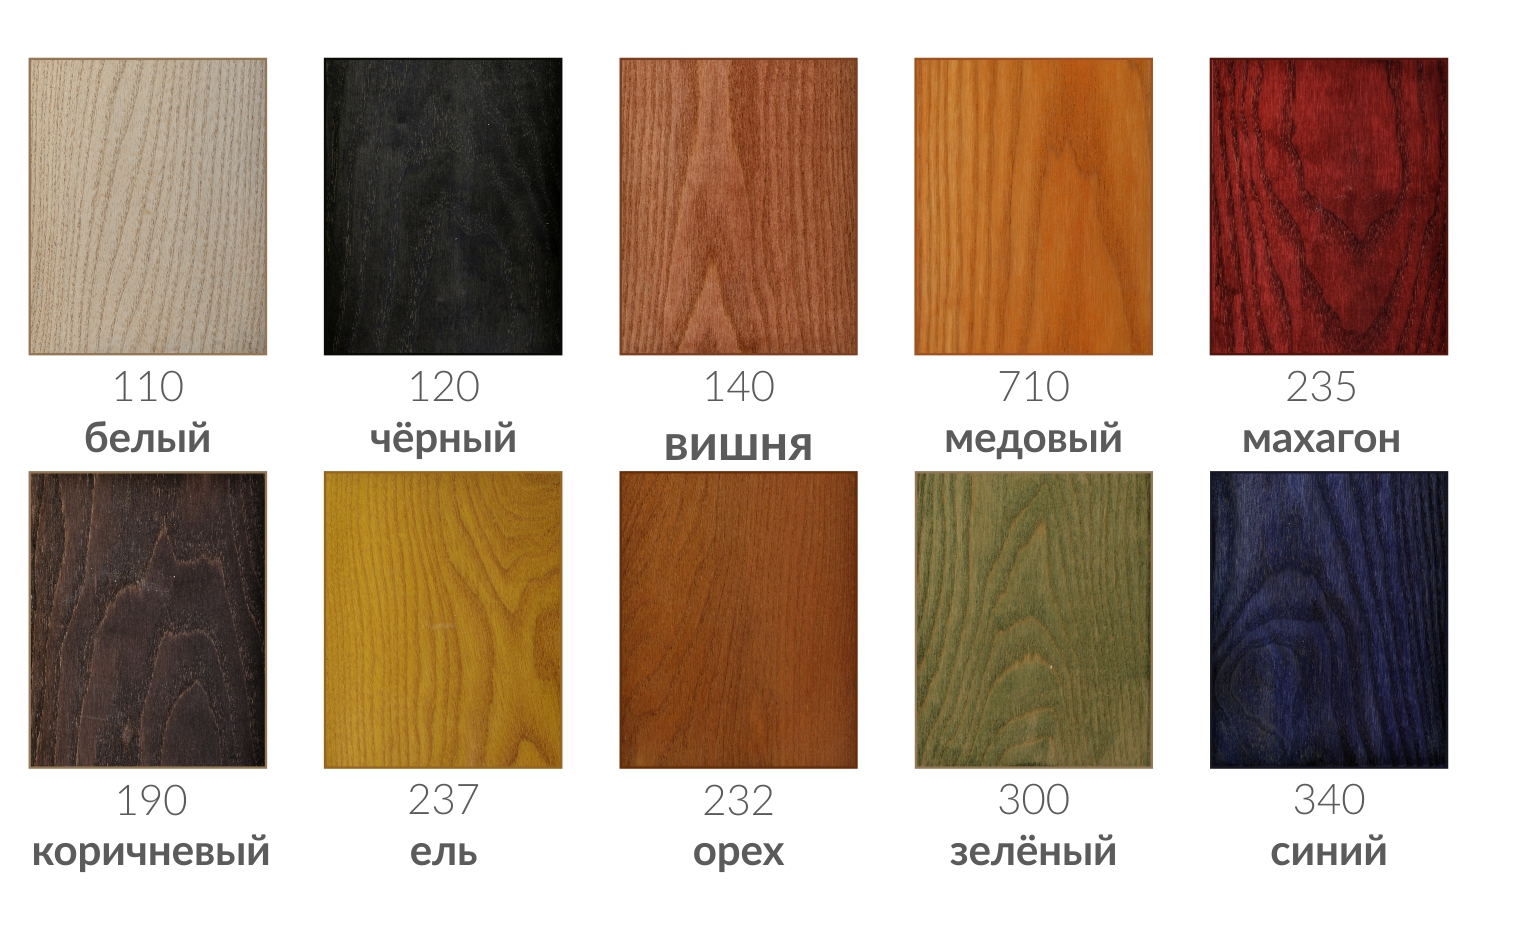 Морилка для дерева: виды, цветовая гамма, какую выбрать, как сделать и покрыть деревянные изделия своими руками